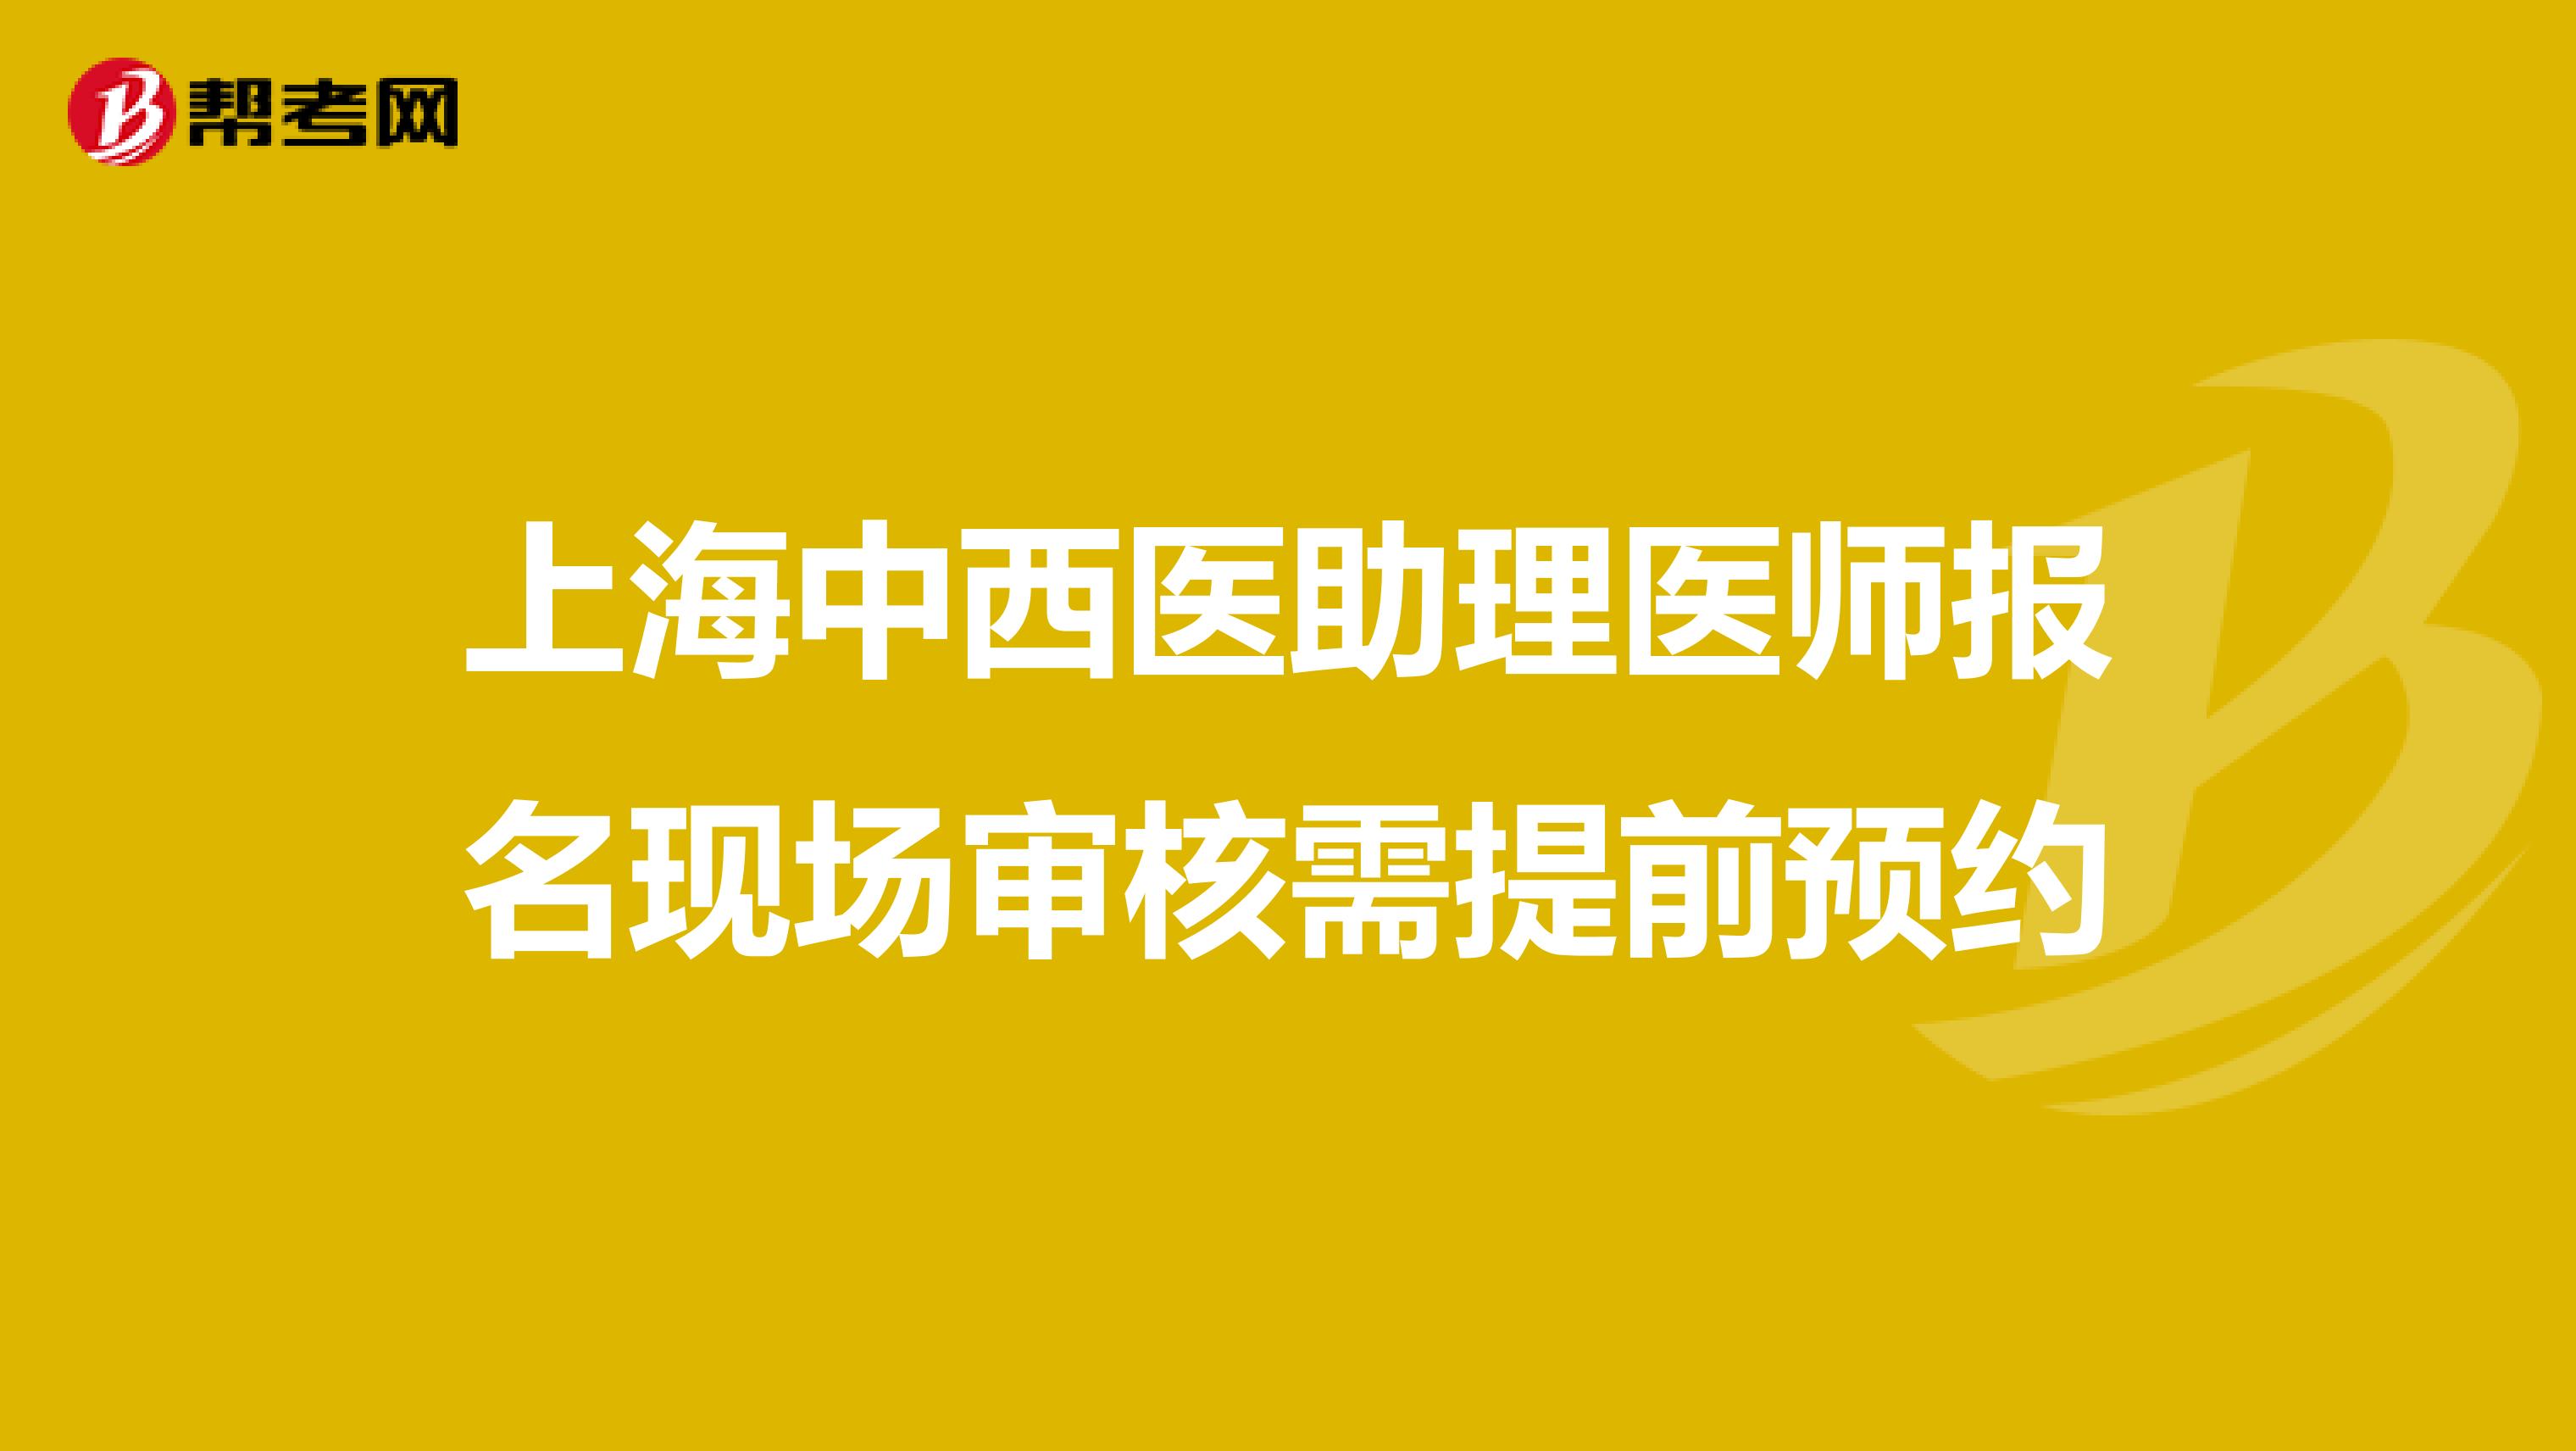 上海中西医助理医师报名现场审核需提前预约